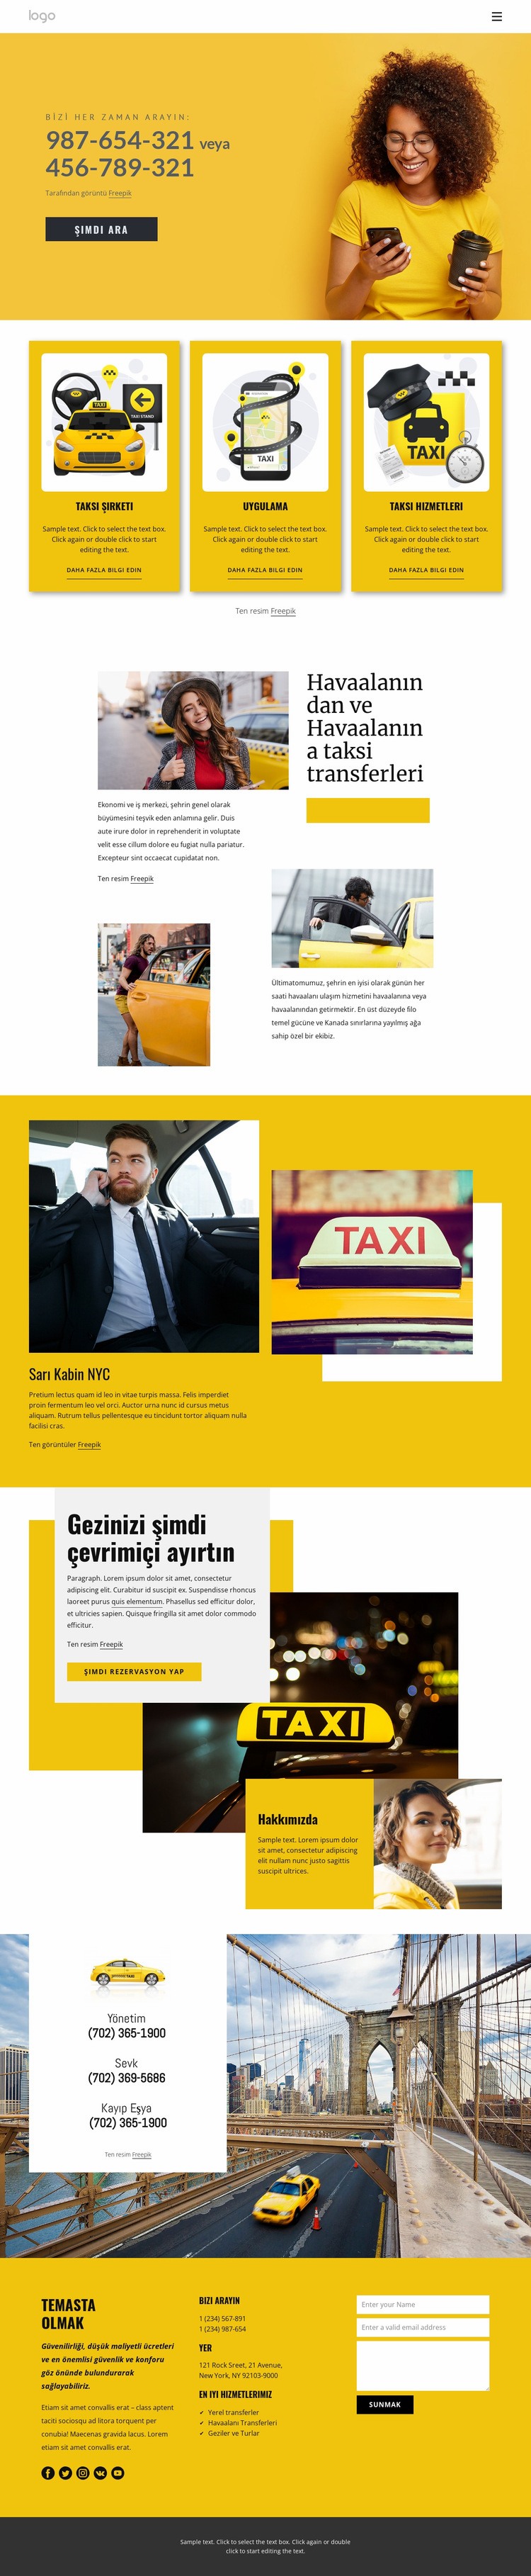 Kaliteli taksi hizmeti Açılış sayfası